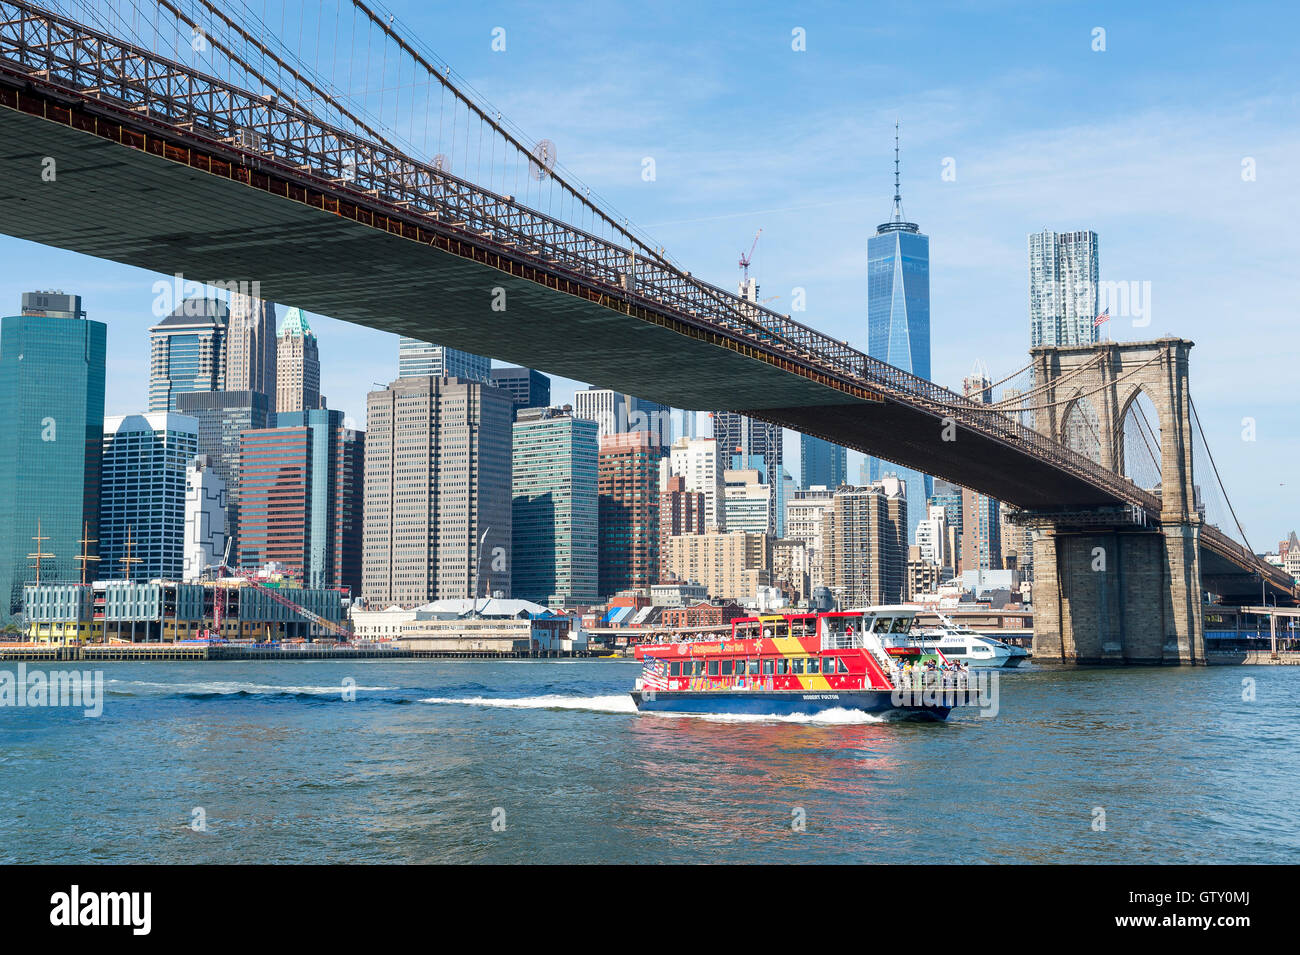 NEW YORK - 27 août 2016 : un ferry transporte les touristes de couleur vive sous le pont de Brooklyn au cours d'un voyage autour de Manhattan. Banque D'Images